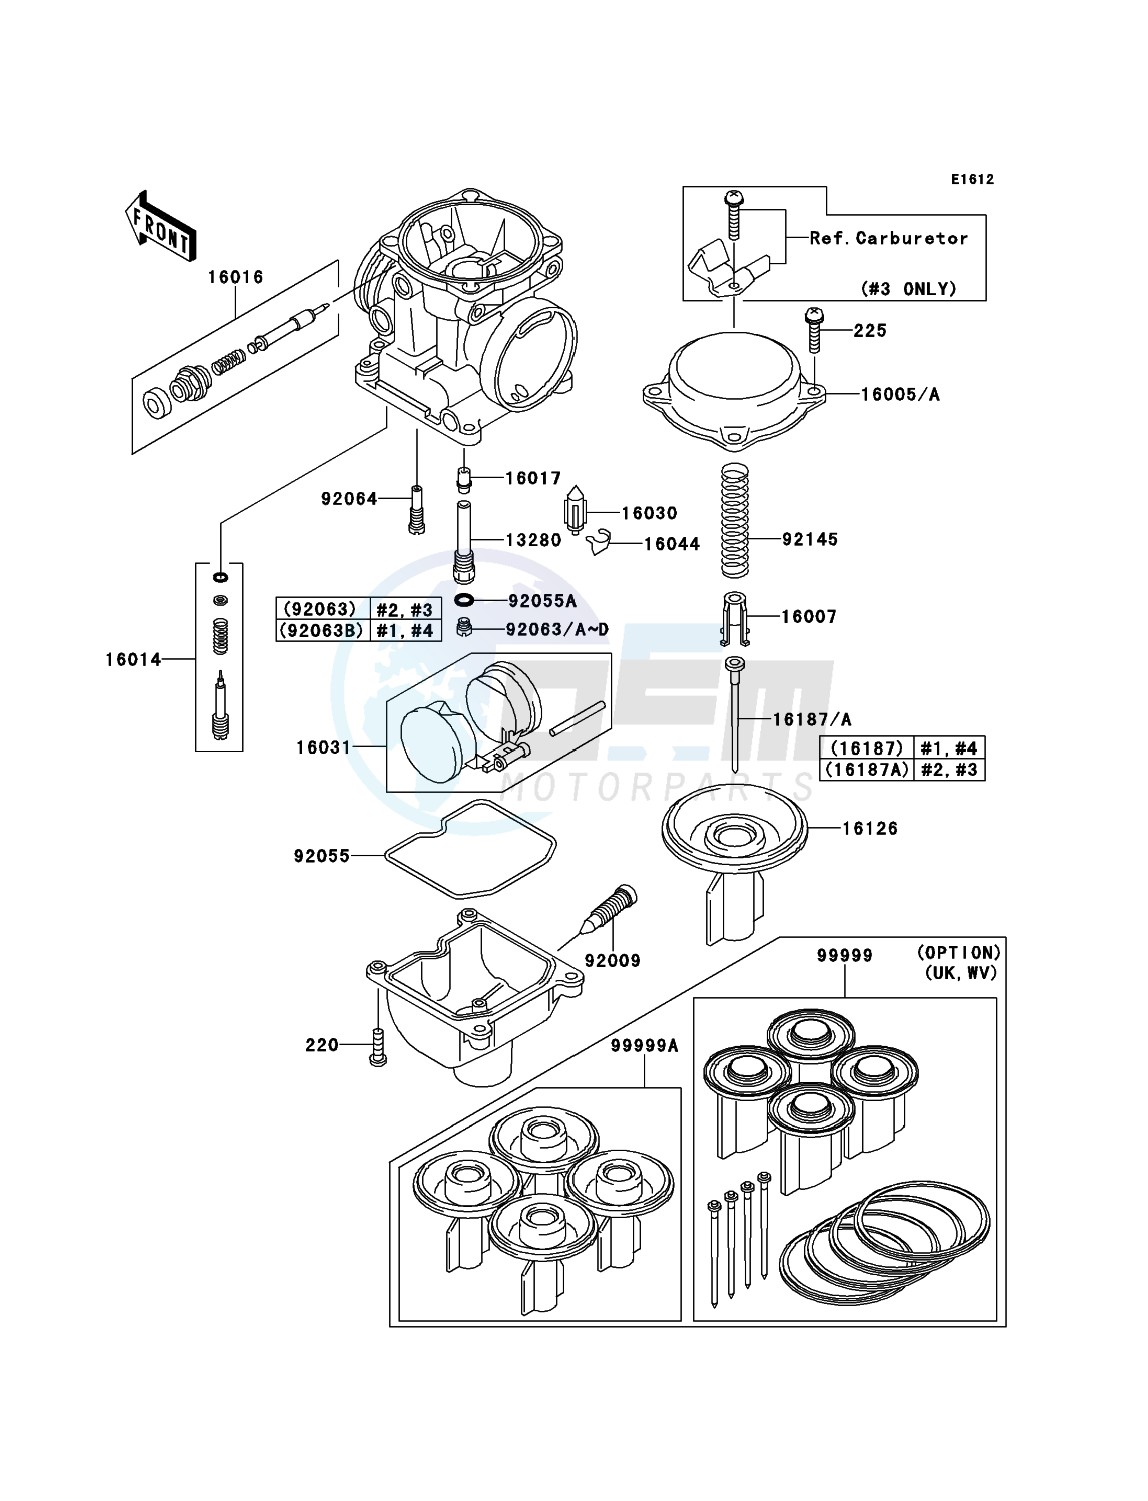 Carburetor Parts blueprint